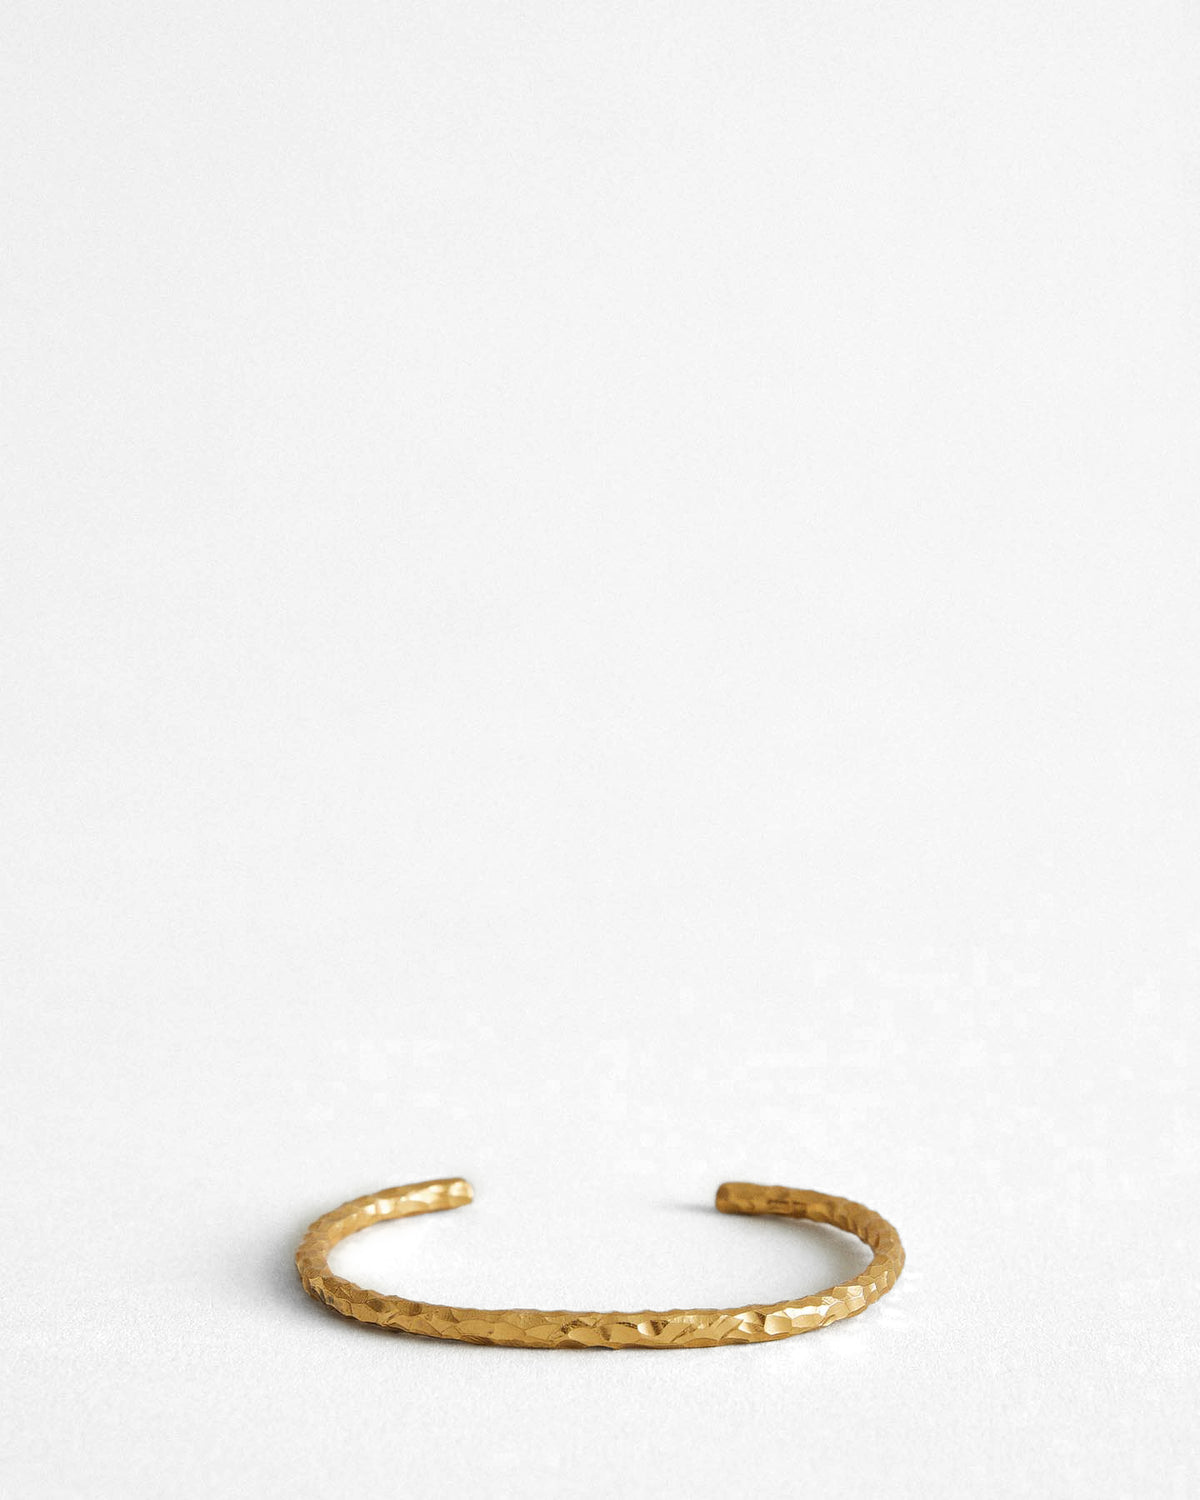 Snake Bracelet Thick Carved Gold